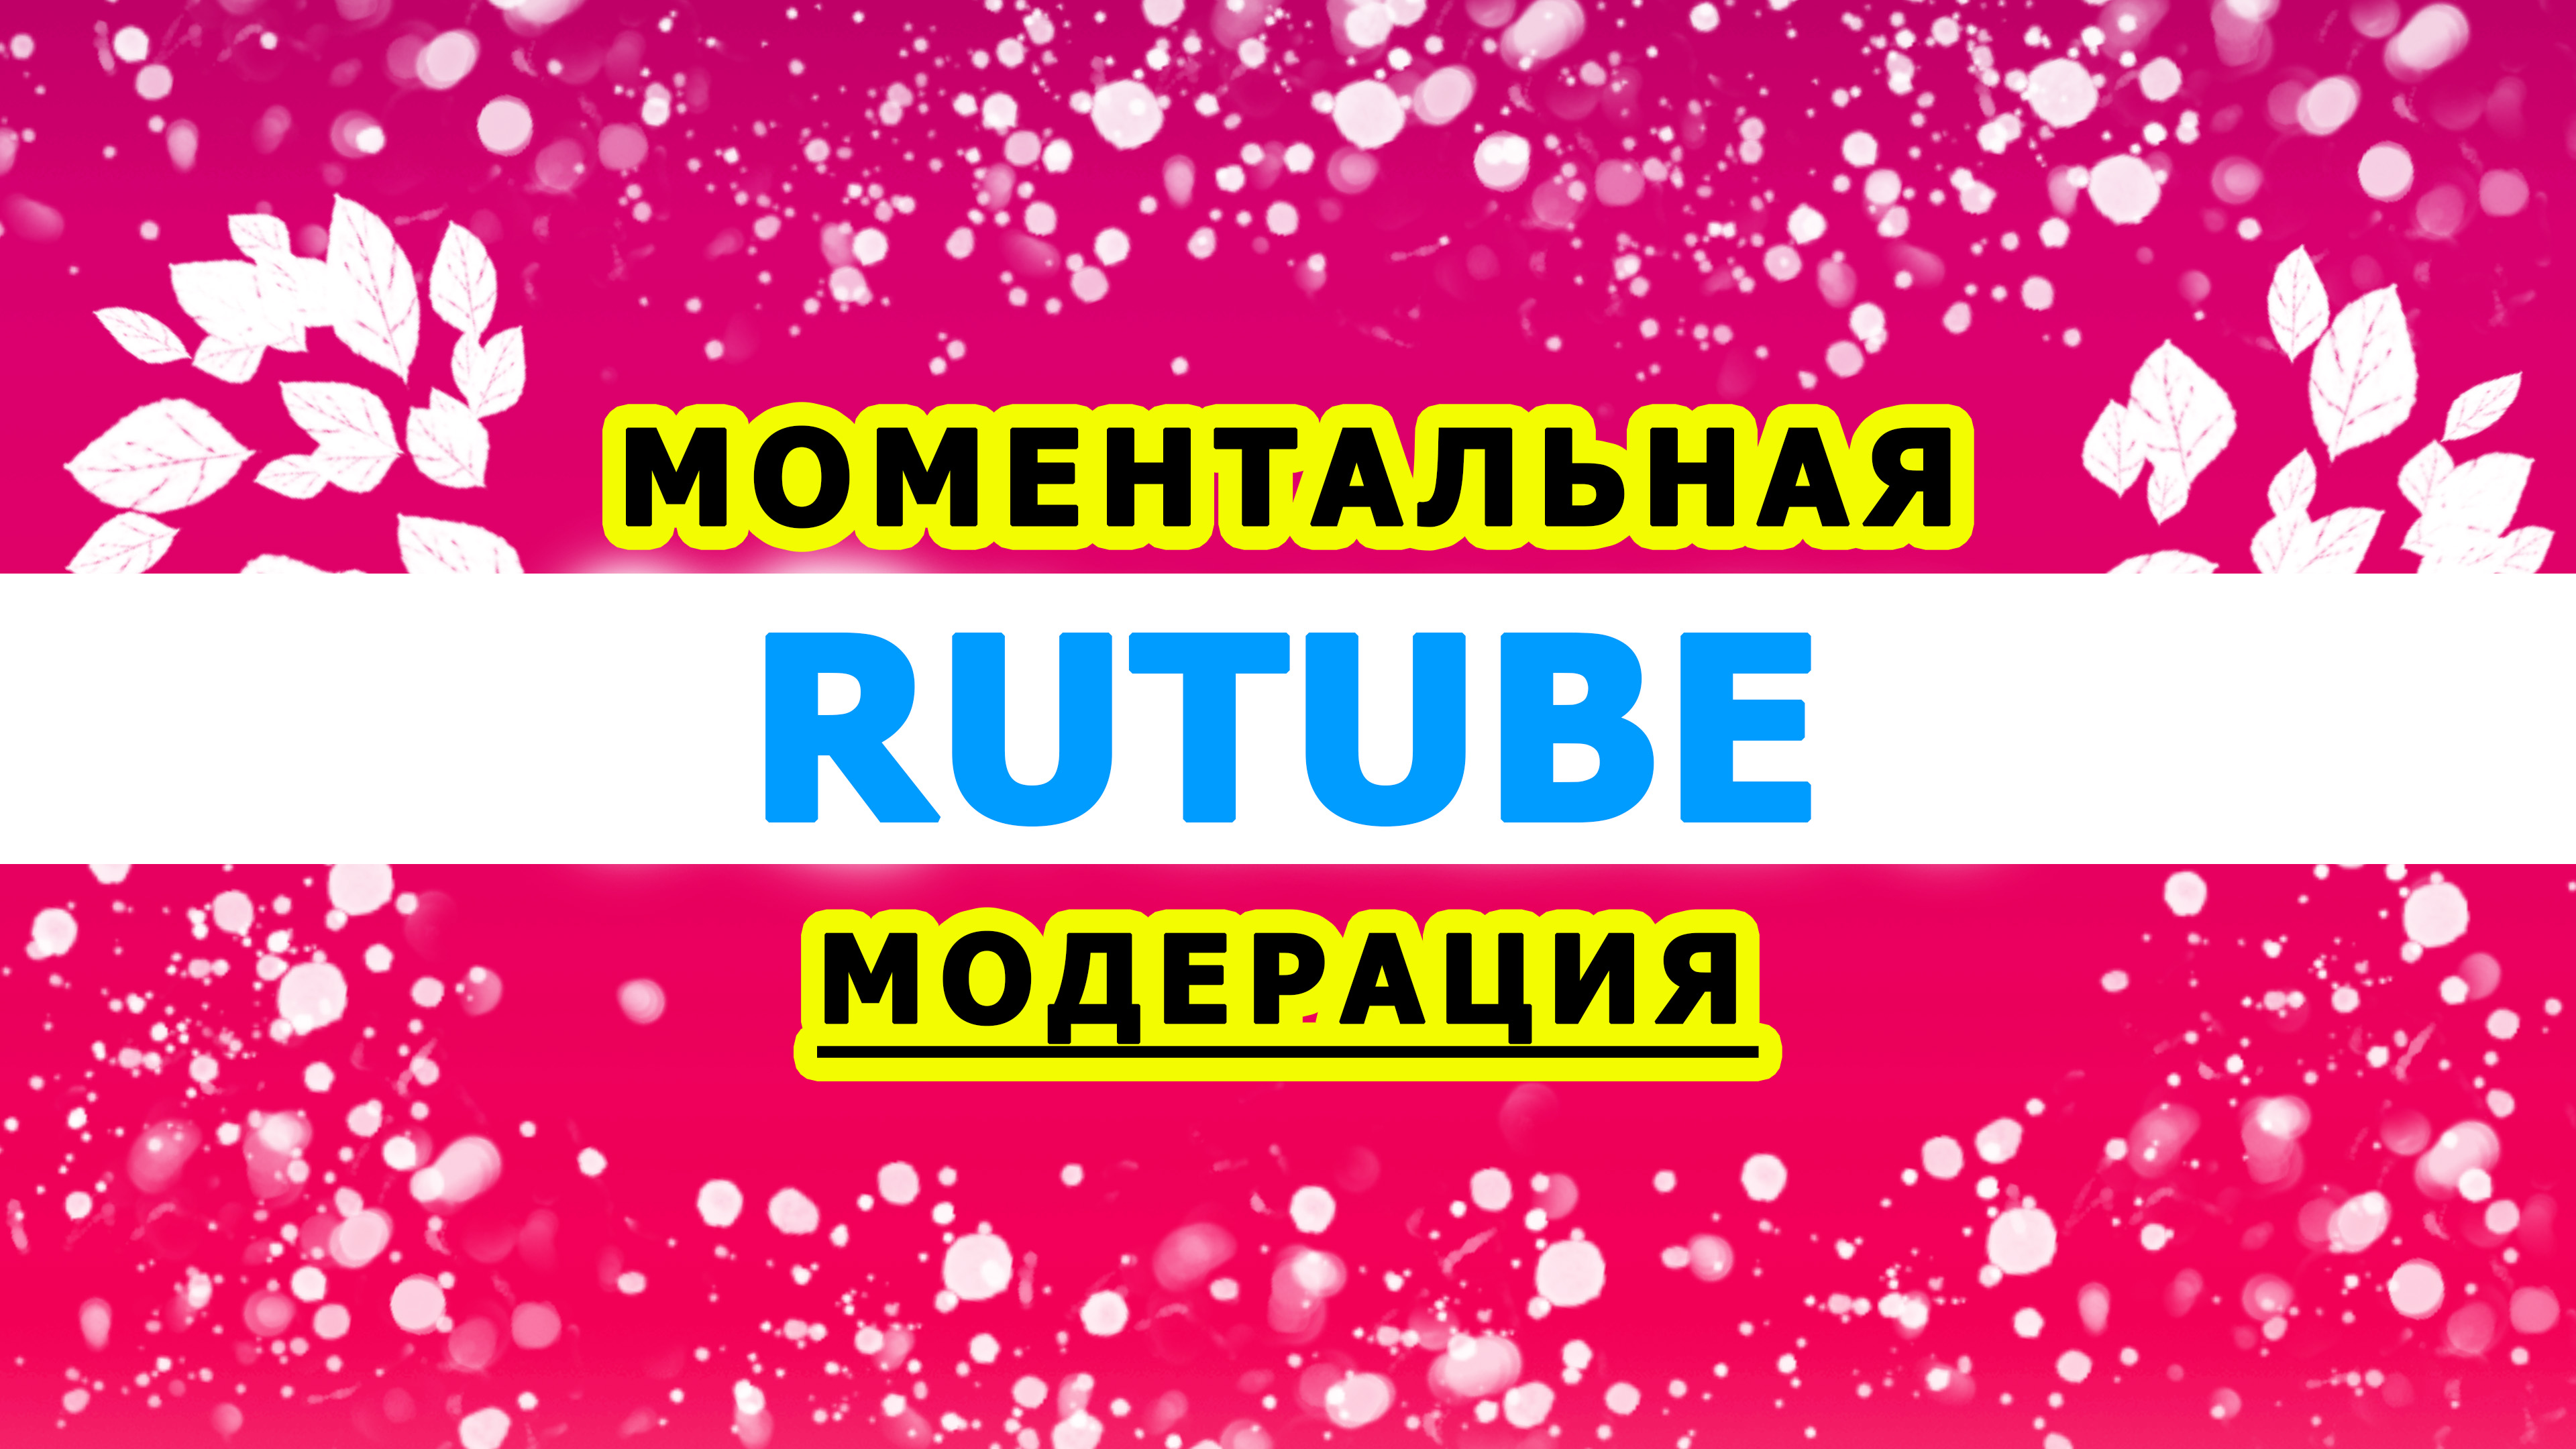 Моментальная модерация видео на РУТУБ 2022 / RUTUBE